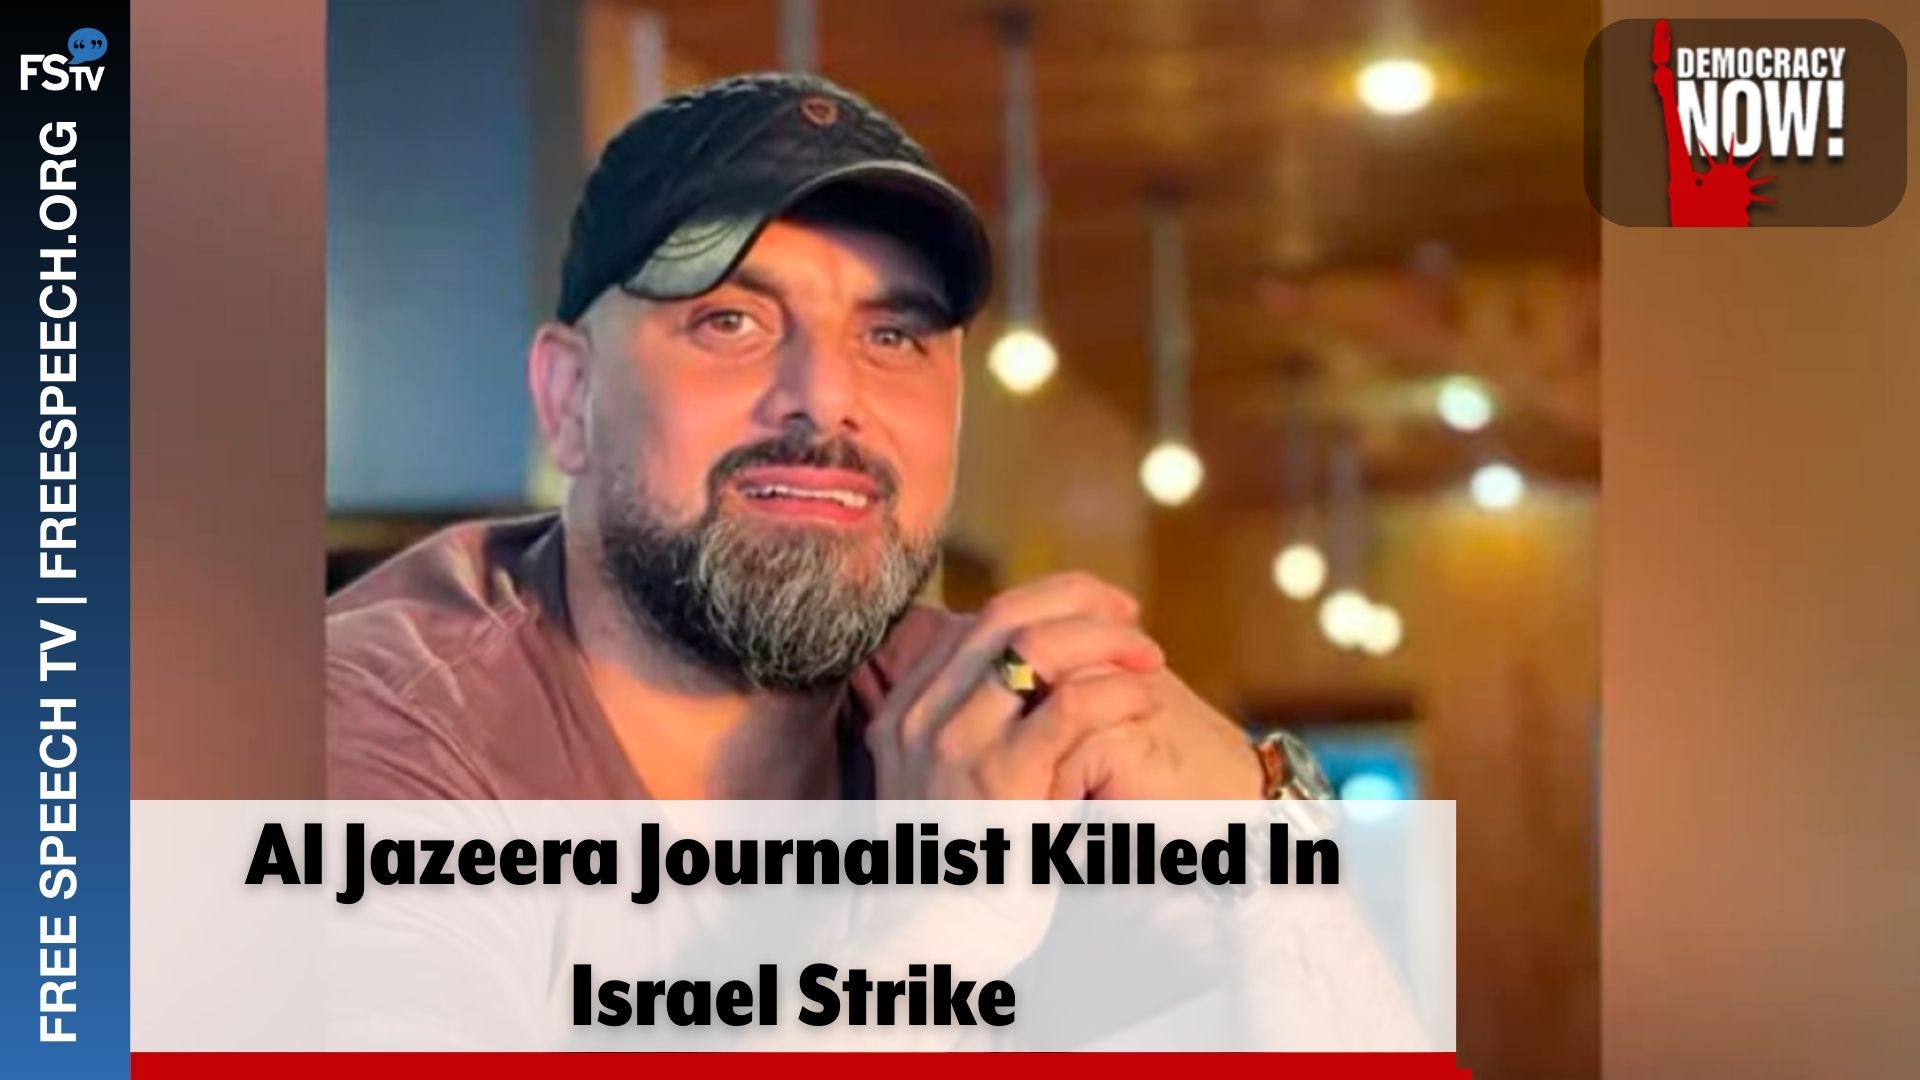 Al Jazeera Journalist Killed In Israel Strike